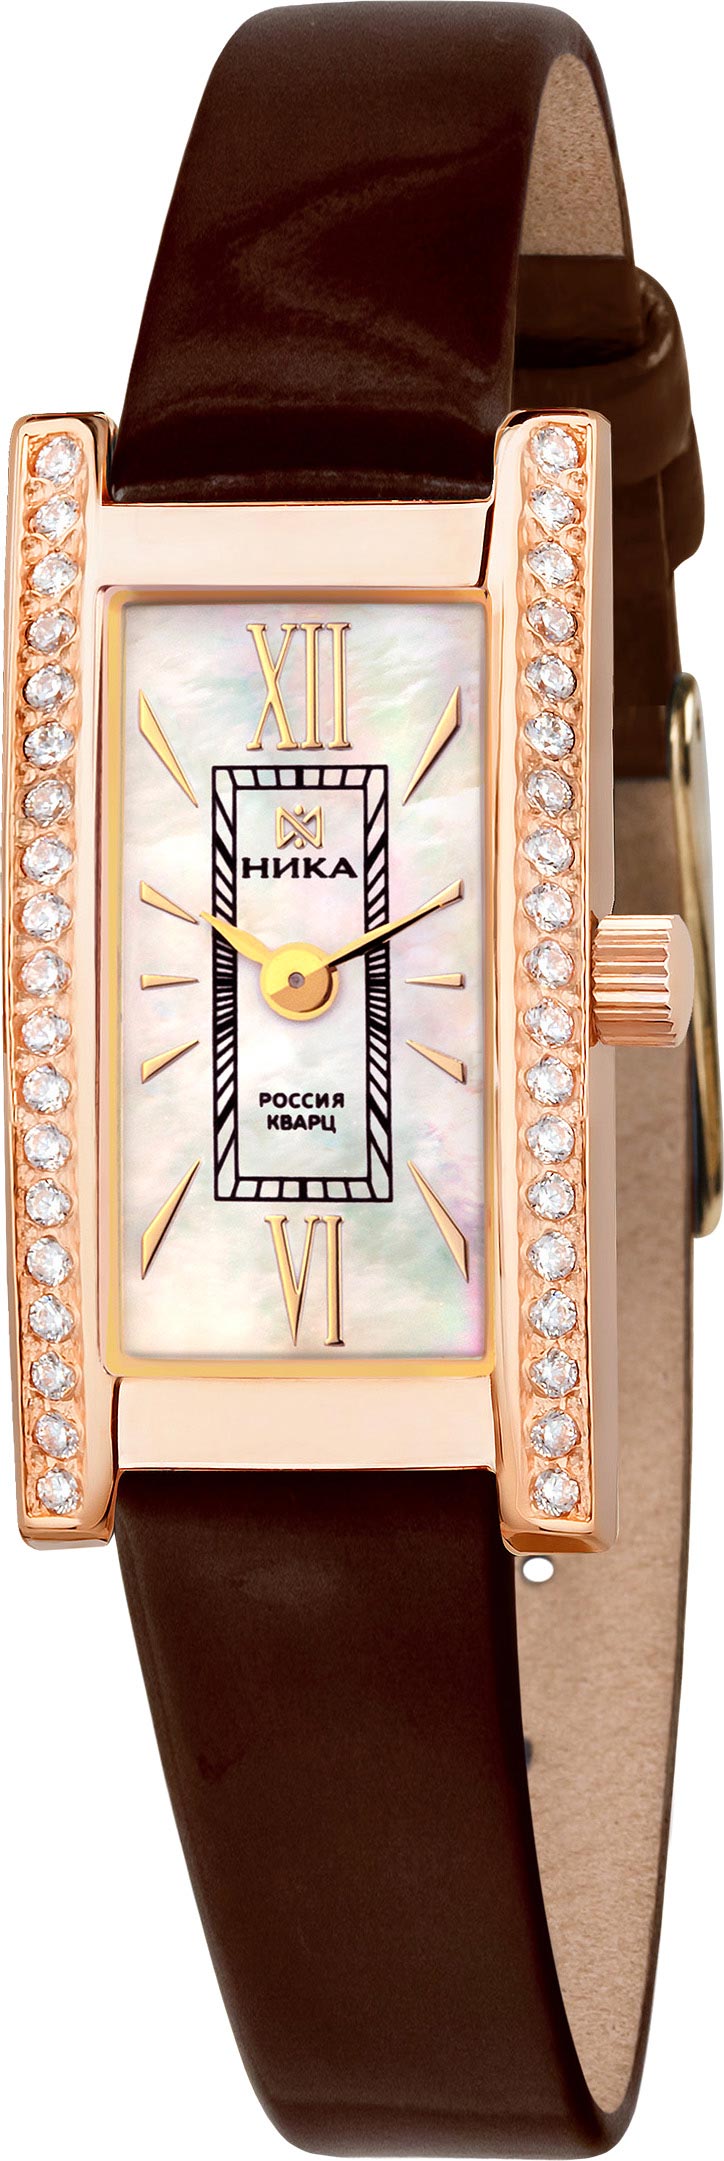 Наручные часы Ника 0438.2.1.31H — купить в интернет-магазине AllTime.ru по лучшей цене, фото, характеристики, инструкция, описание